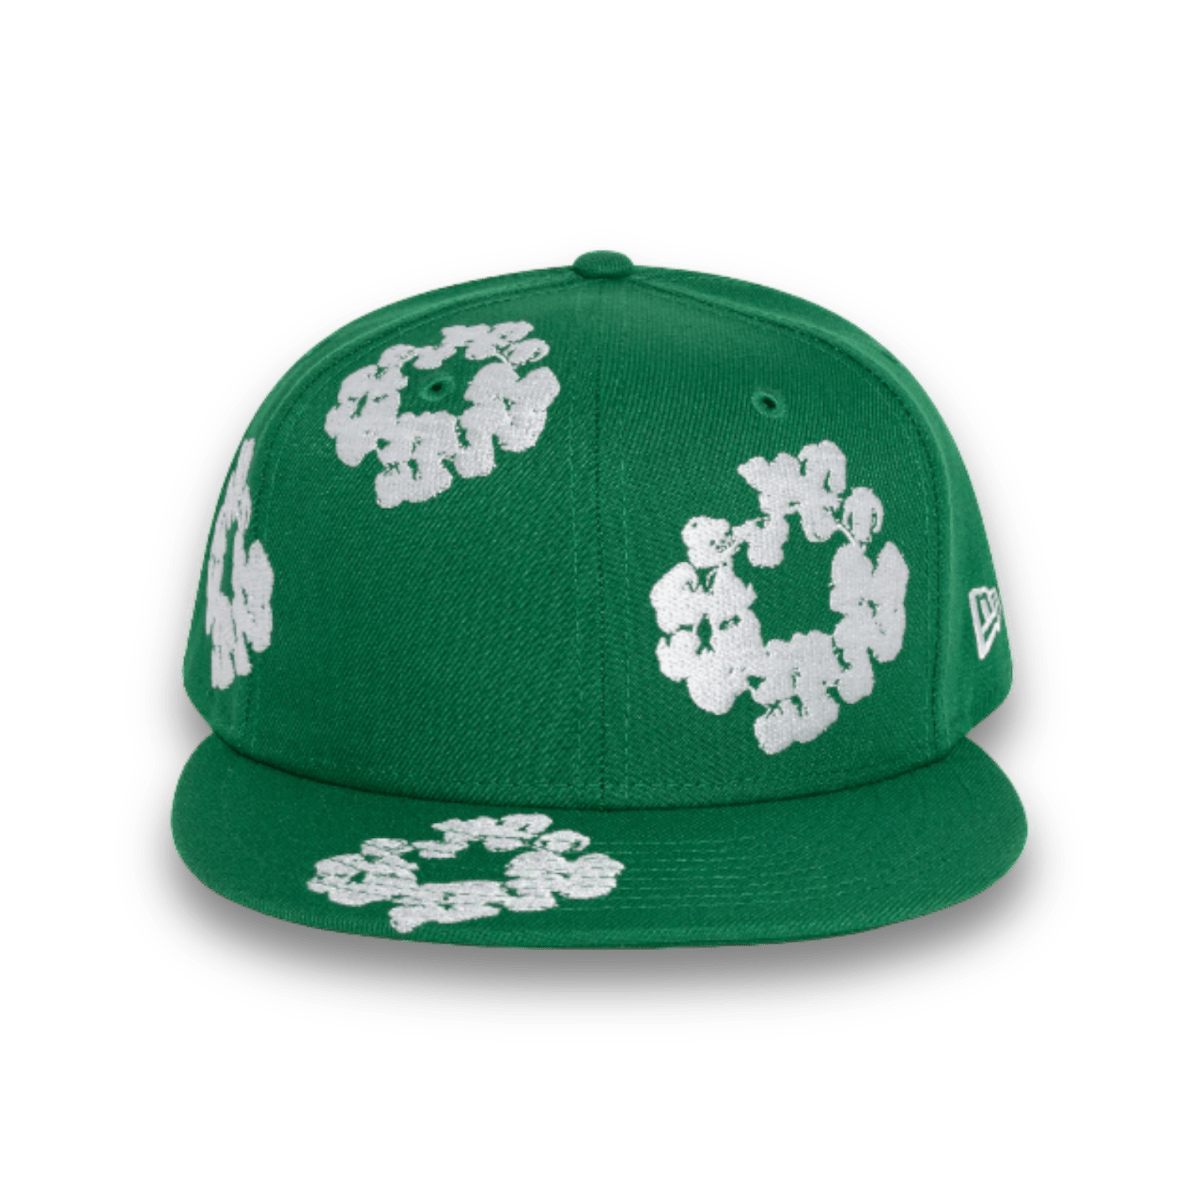 Denim Tears New Era Cotton Wreath Hat 59/50 - Green - Headwear - Jawns on Fire Sneakers & Streetwear